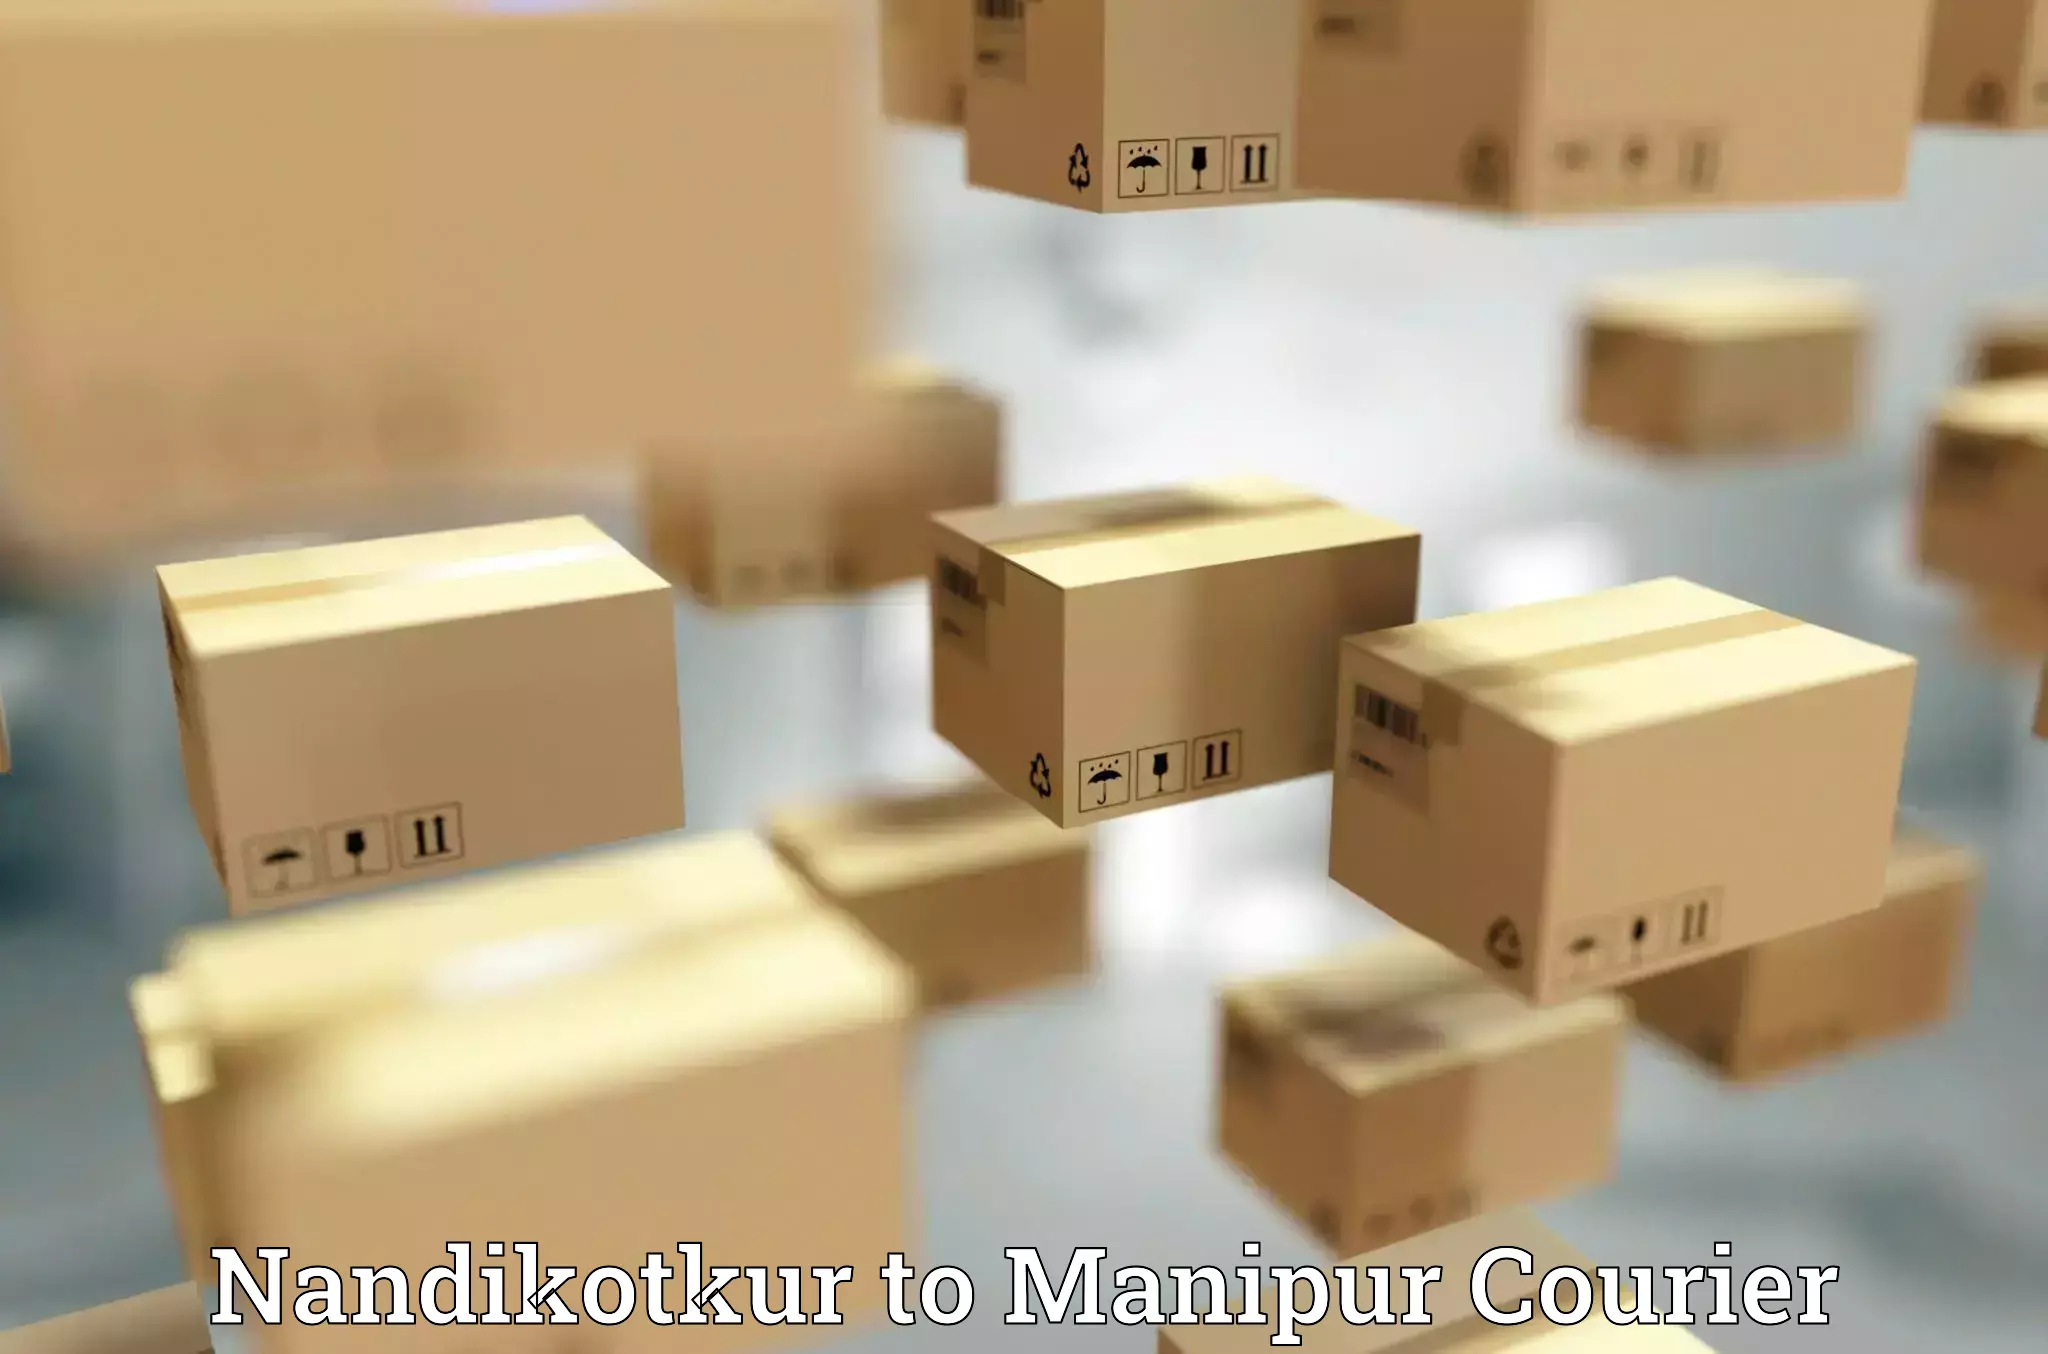 Courier service comparison in Nandikotkur to Manipur